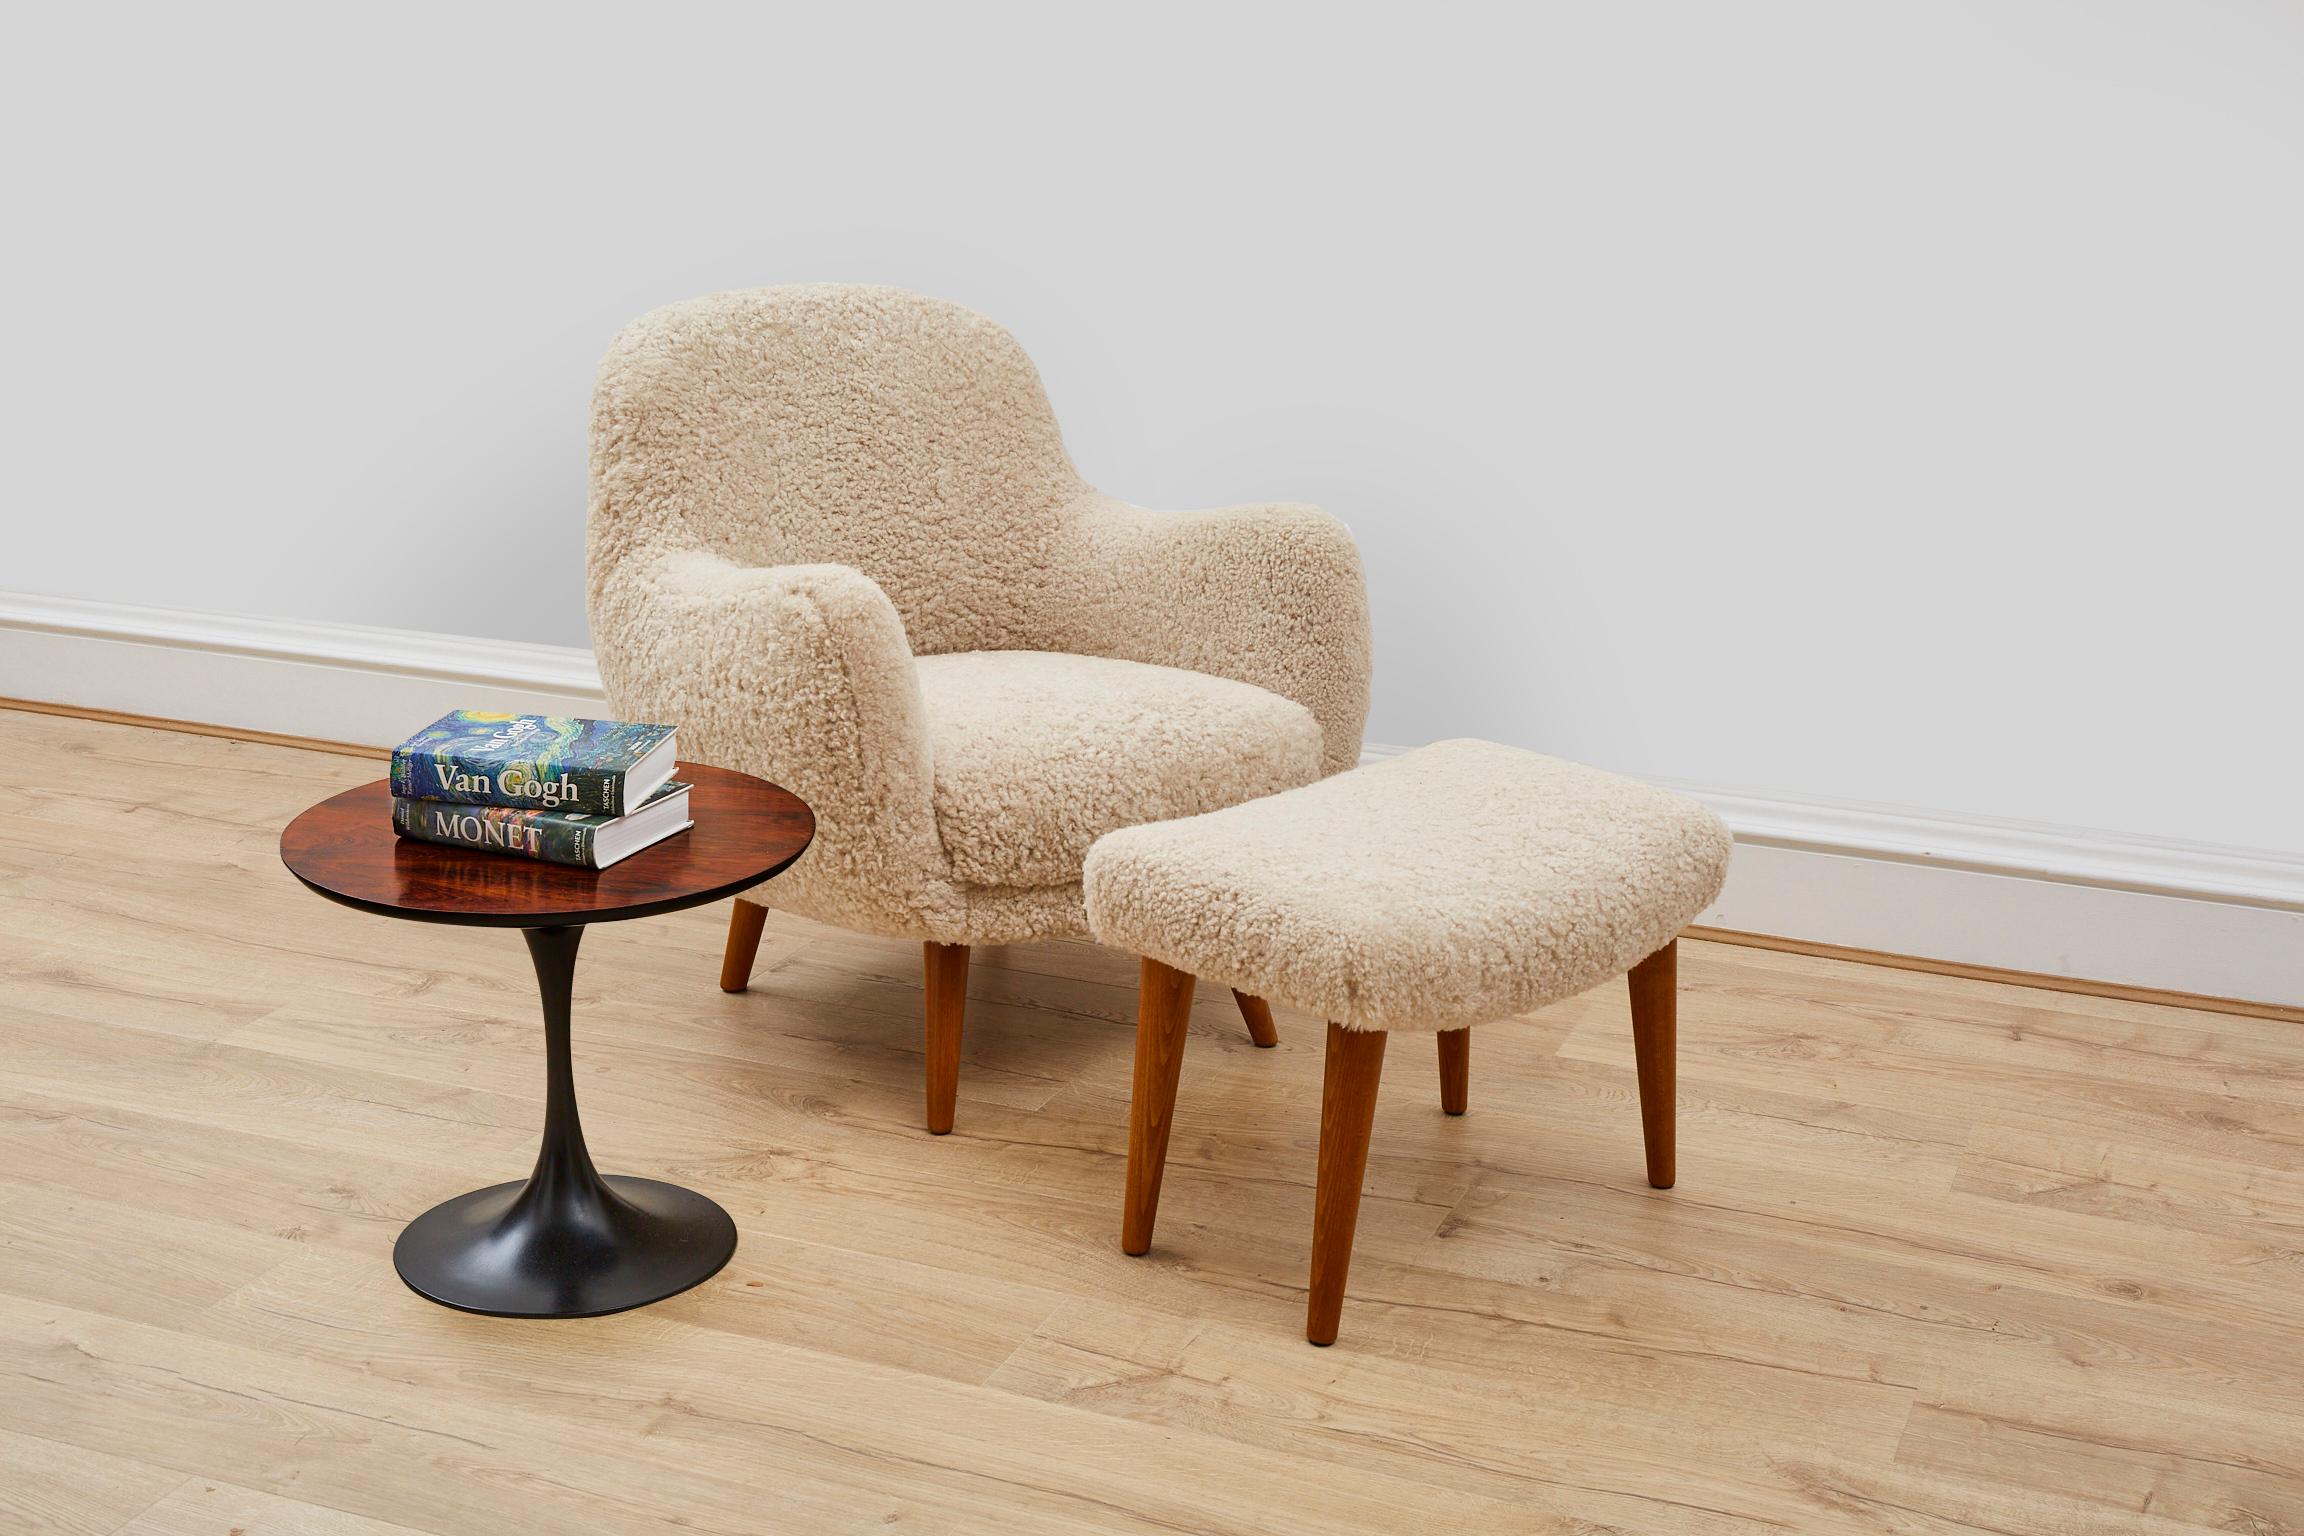 Ce magnifique fauteuil et pouf contemporain est fabriqué à la main exclusivement pour Antique Modern Mix au Royaume-Uni, à l'aide de méthodes traditionnelles et de peau de mouton d'origine éthique provenant de Scandinavie. 

Le cadre est en bois